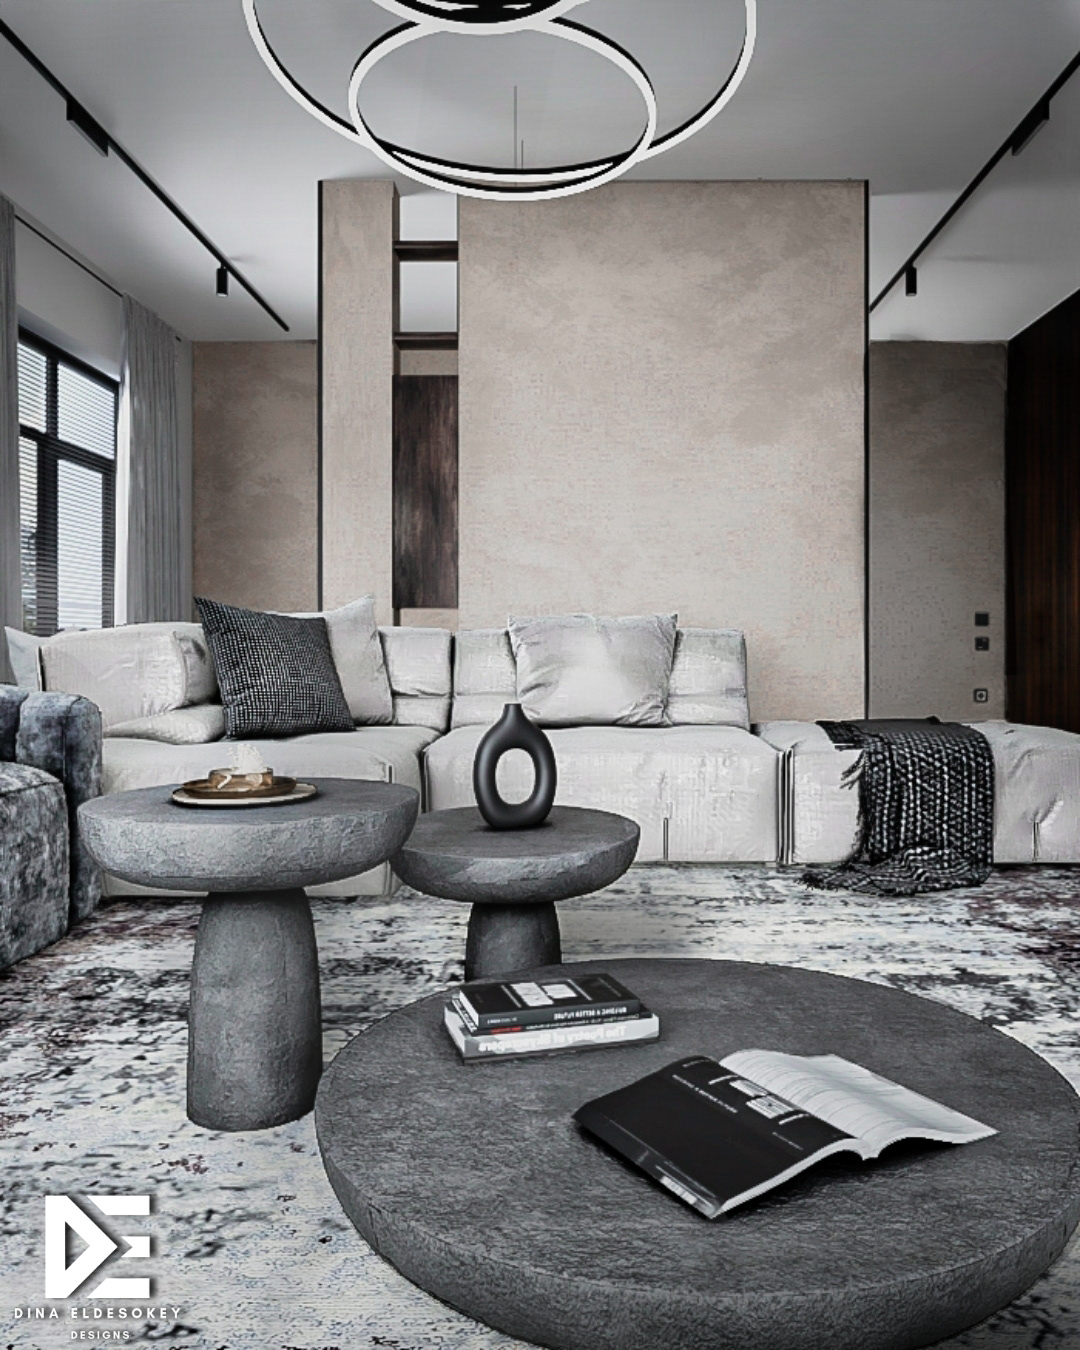 3ds max architecture idea Interior interior design  living room minimalist modern visualization vray